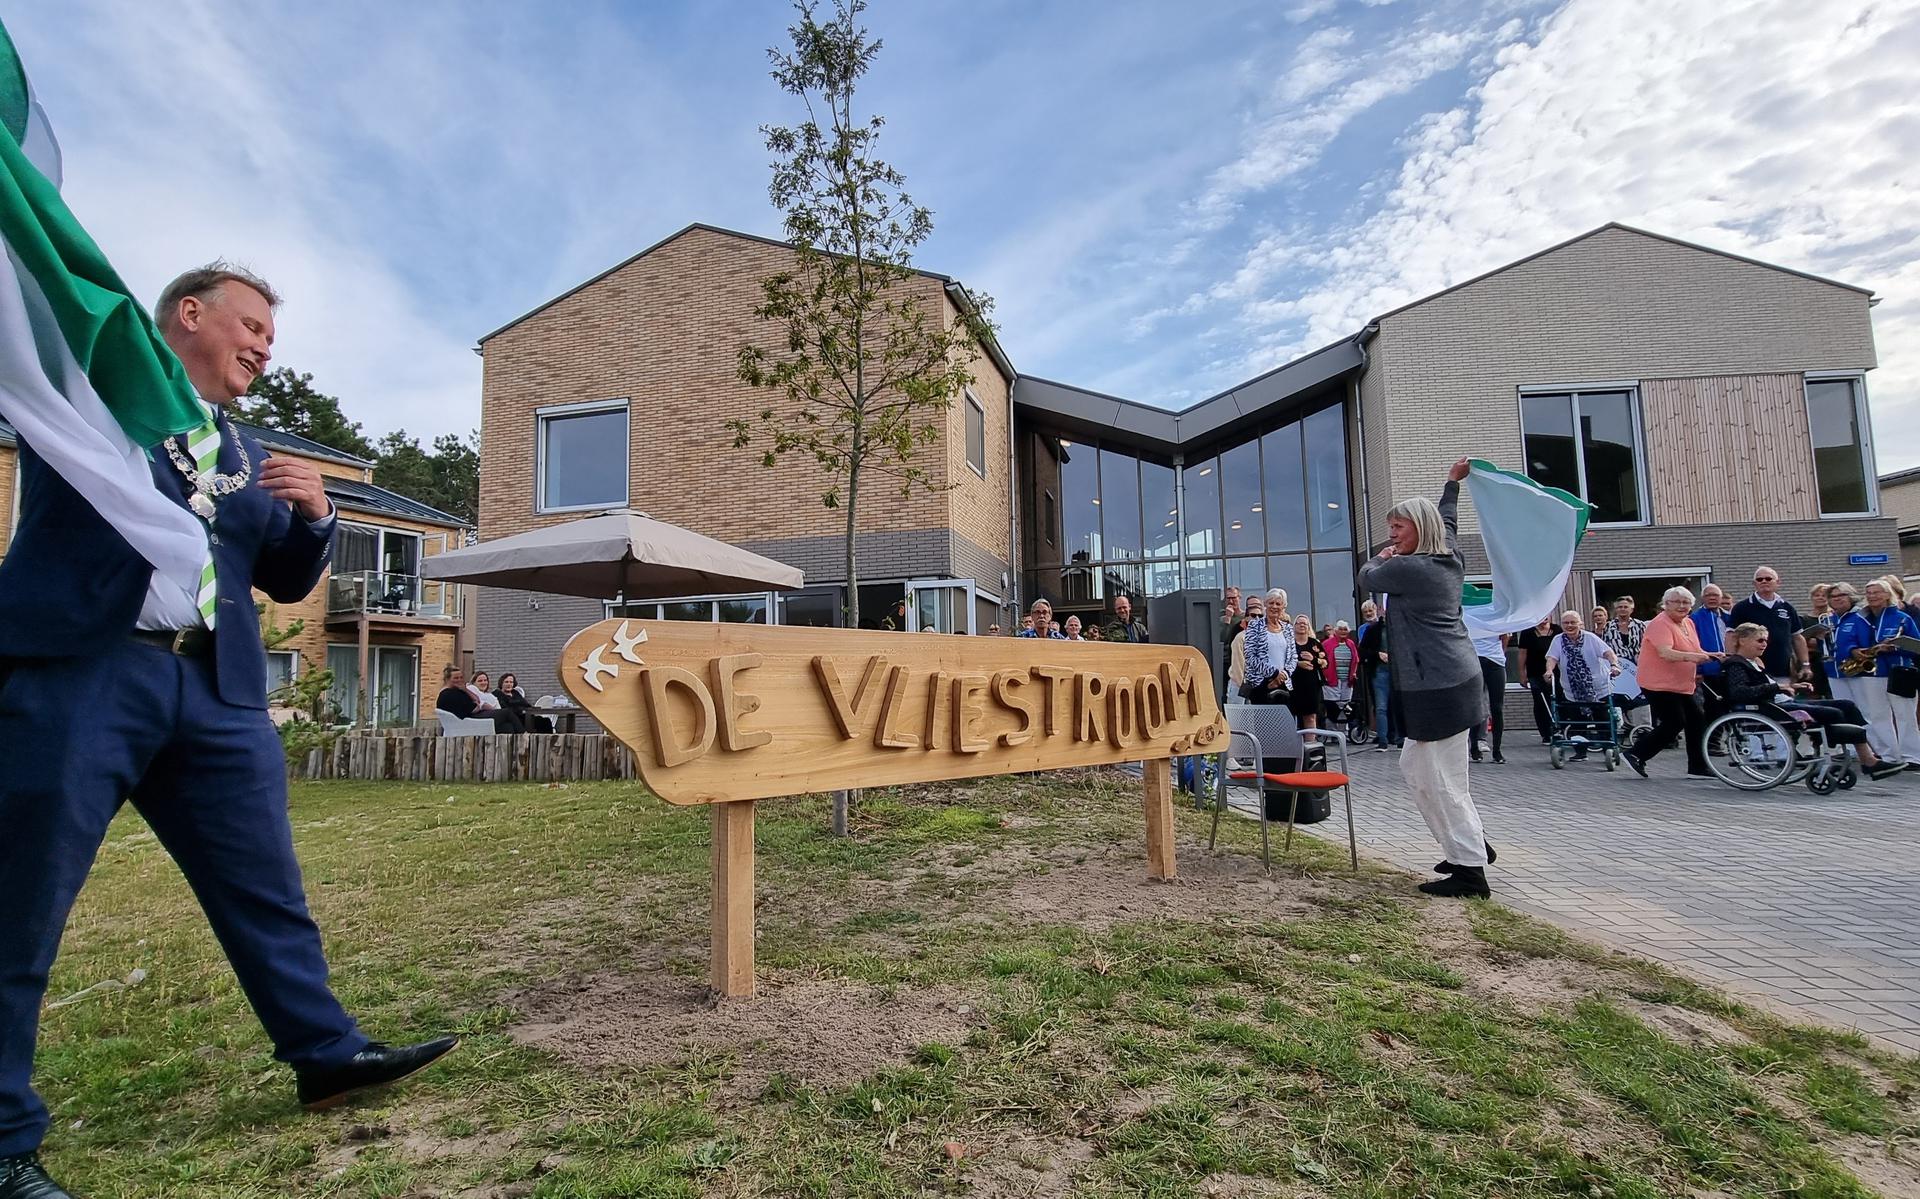 Welzijnsgebouw De Vliestroom op Vlieland is in het najaar van 2022 geopend. 